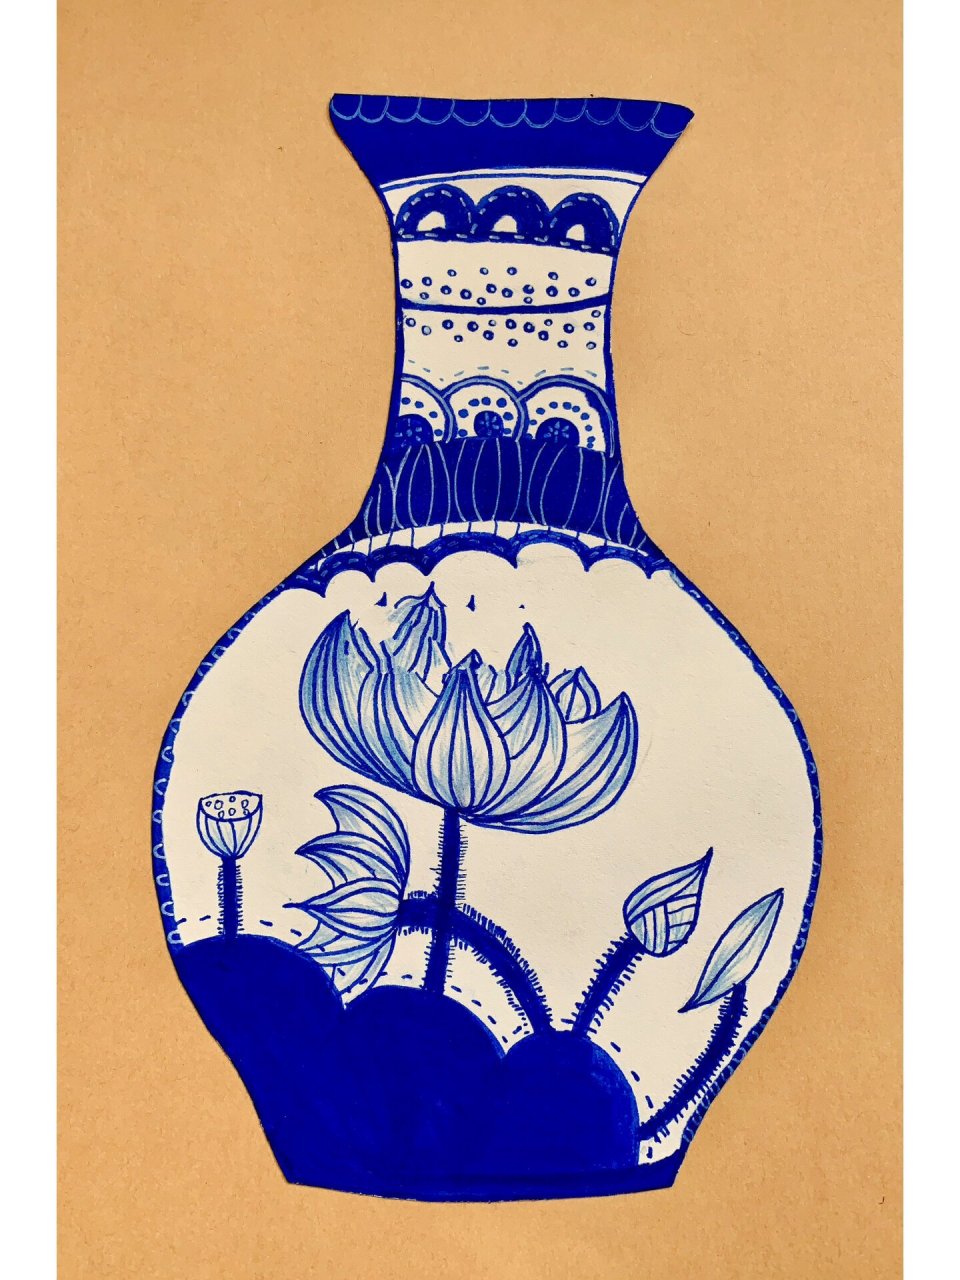 创意阶段绘画花瓶图片